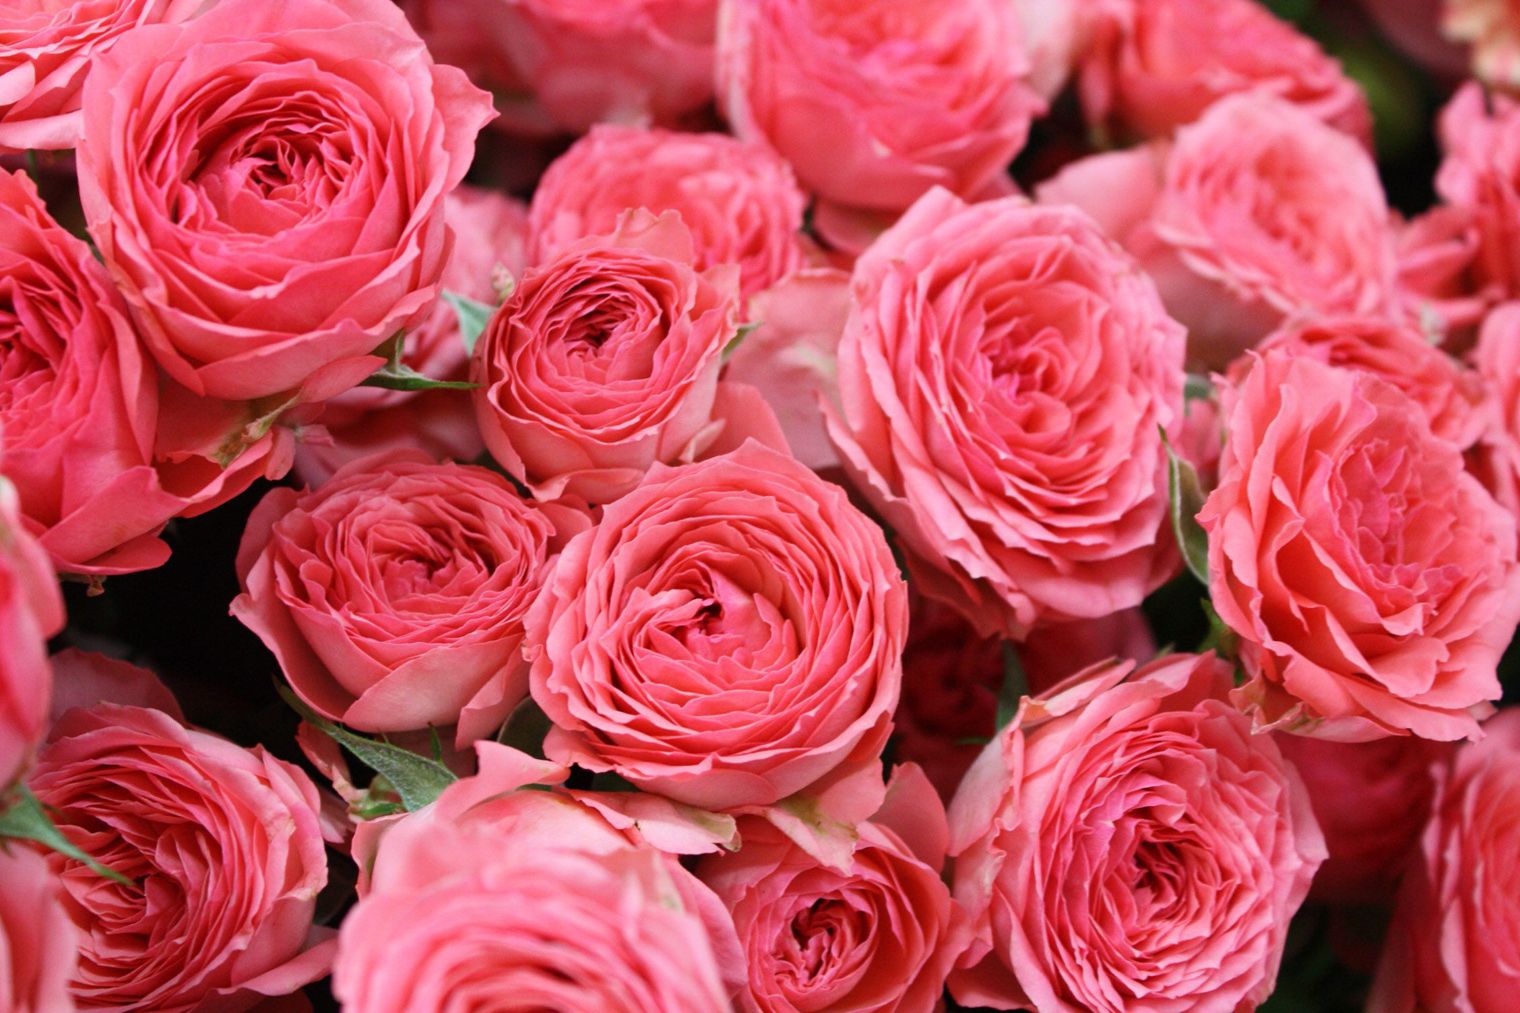 Фото купленных элитных розовых роз